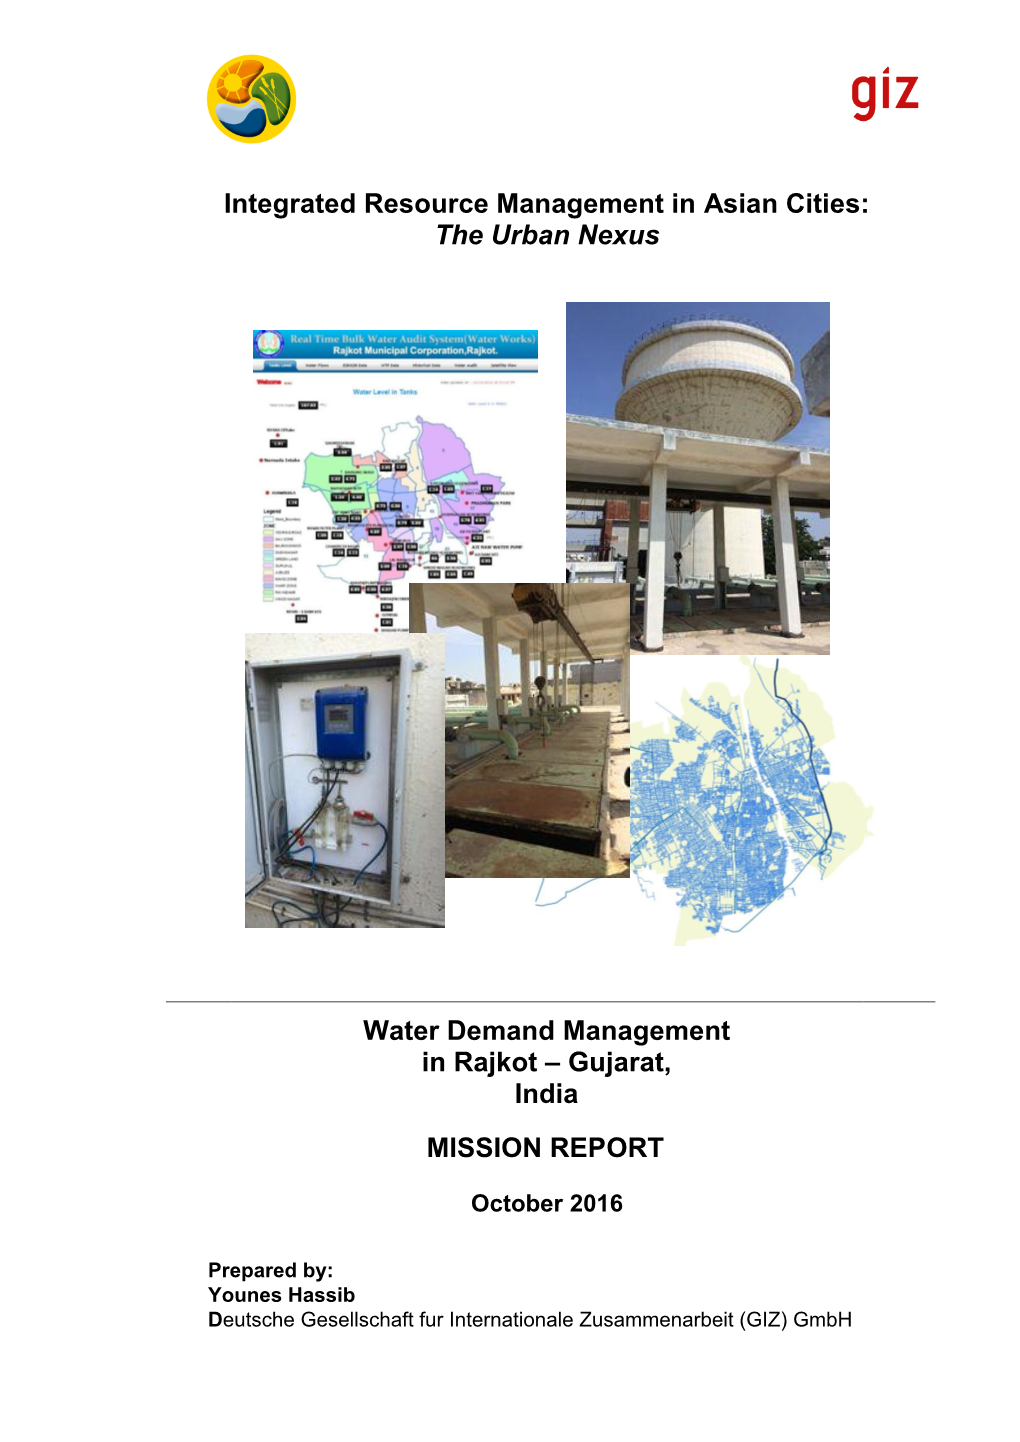 The Urban Nexus Water Demand Management in Rajkot – Gujarat